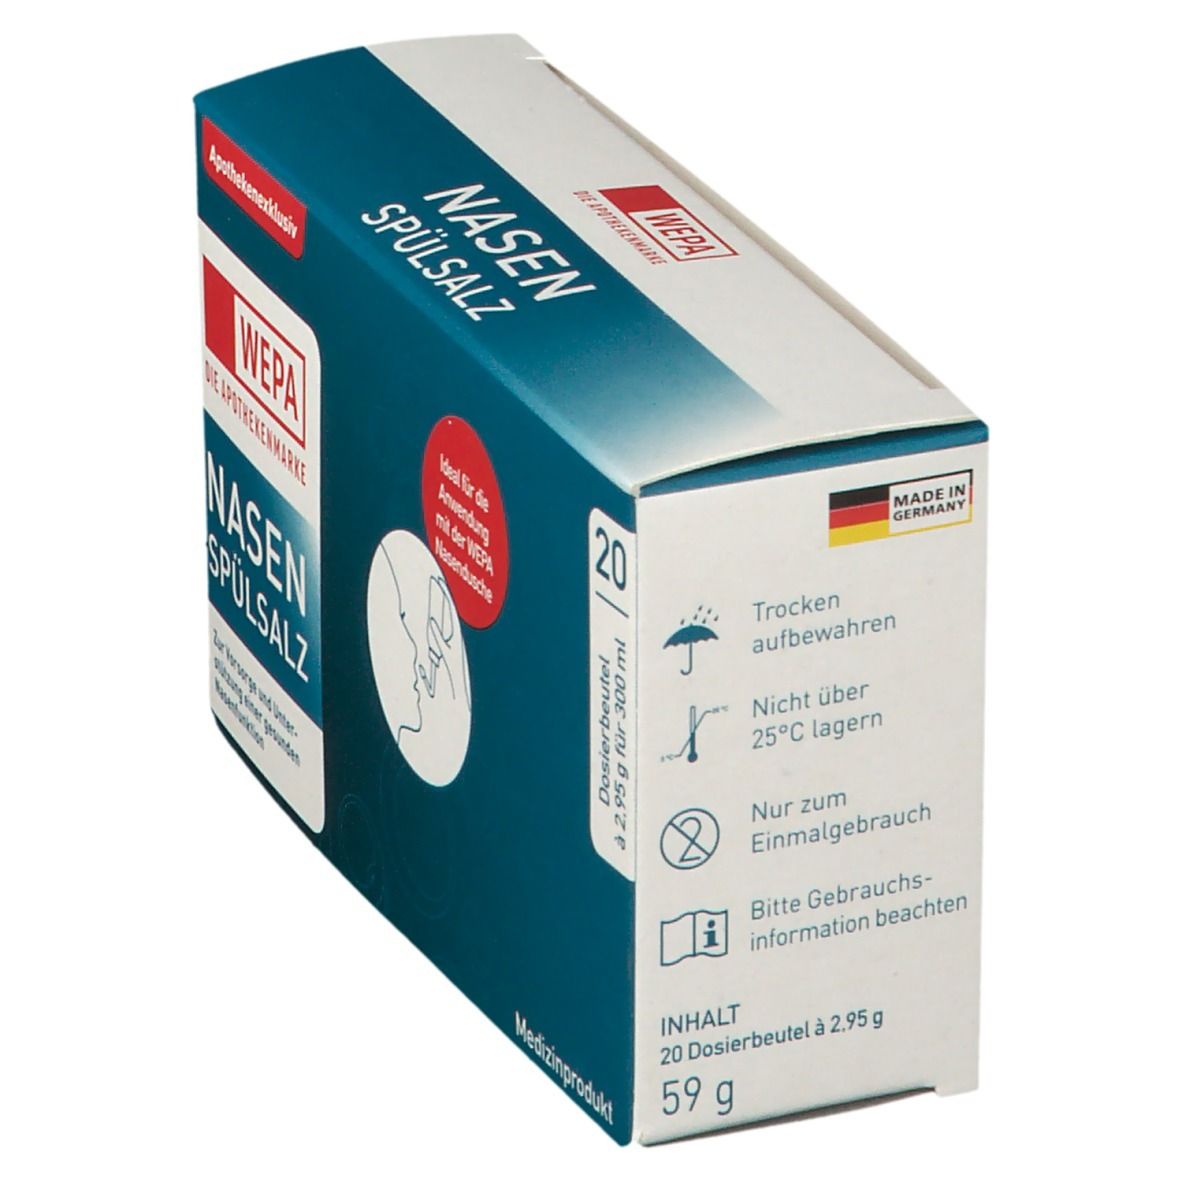 WEPA Pichet de rinçage nasal avec 10 x 2,95 g Sel de rinçage nasal 1 pc(s)  - Redcare Apotheke